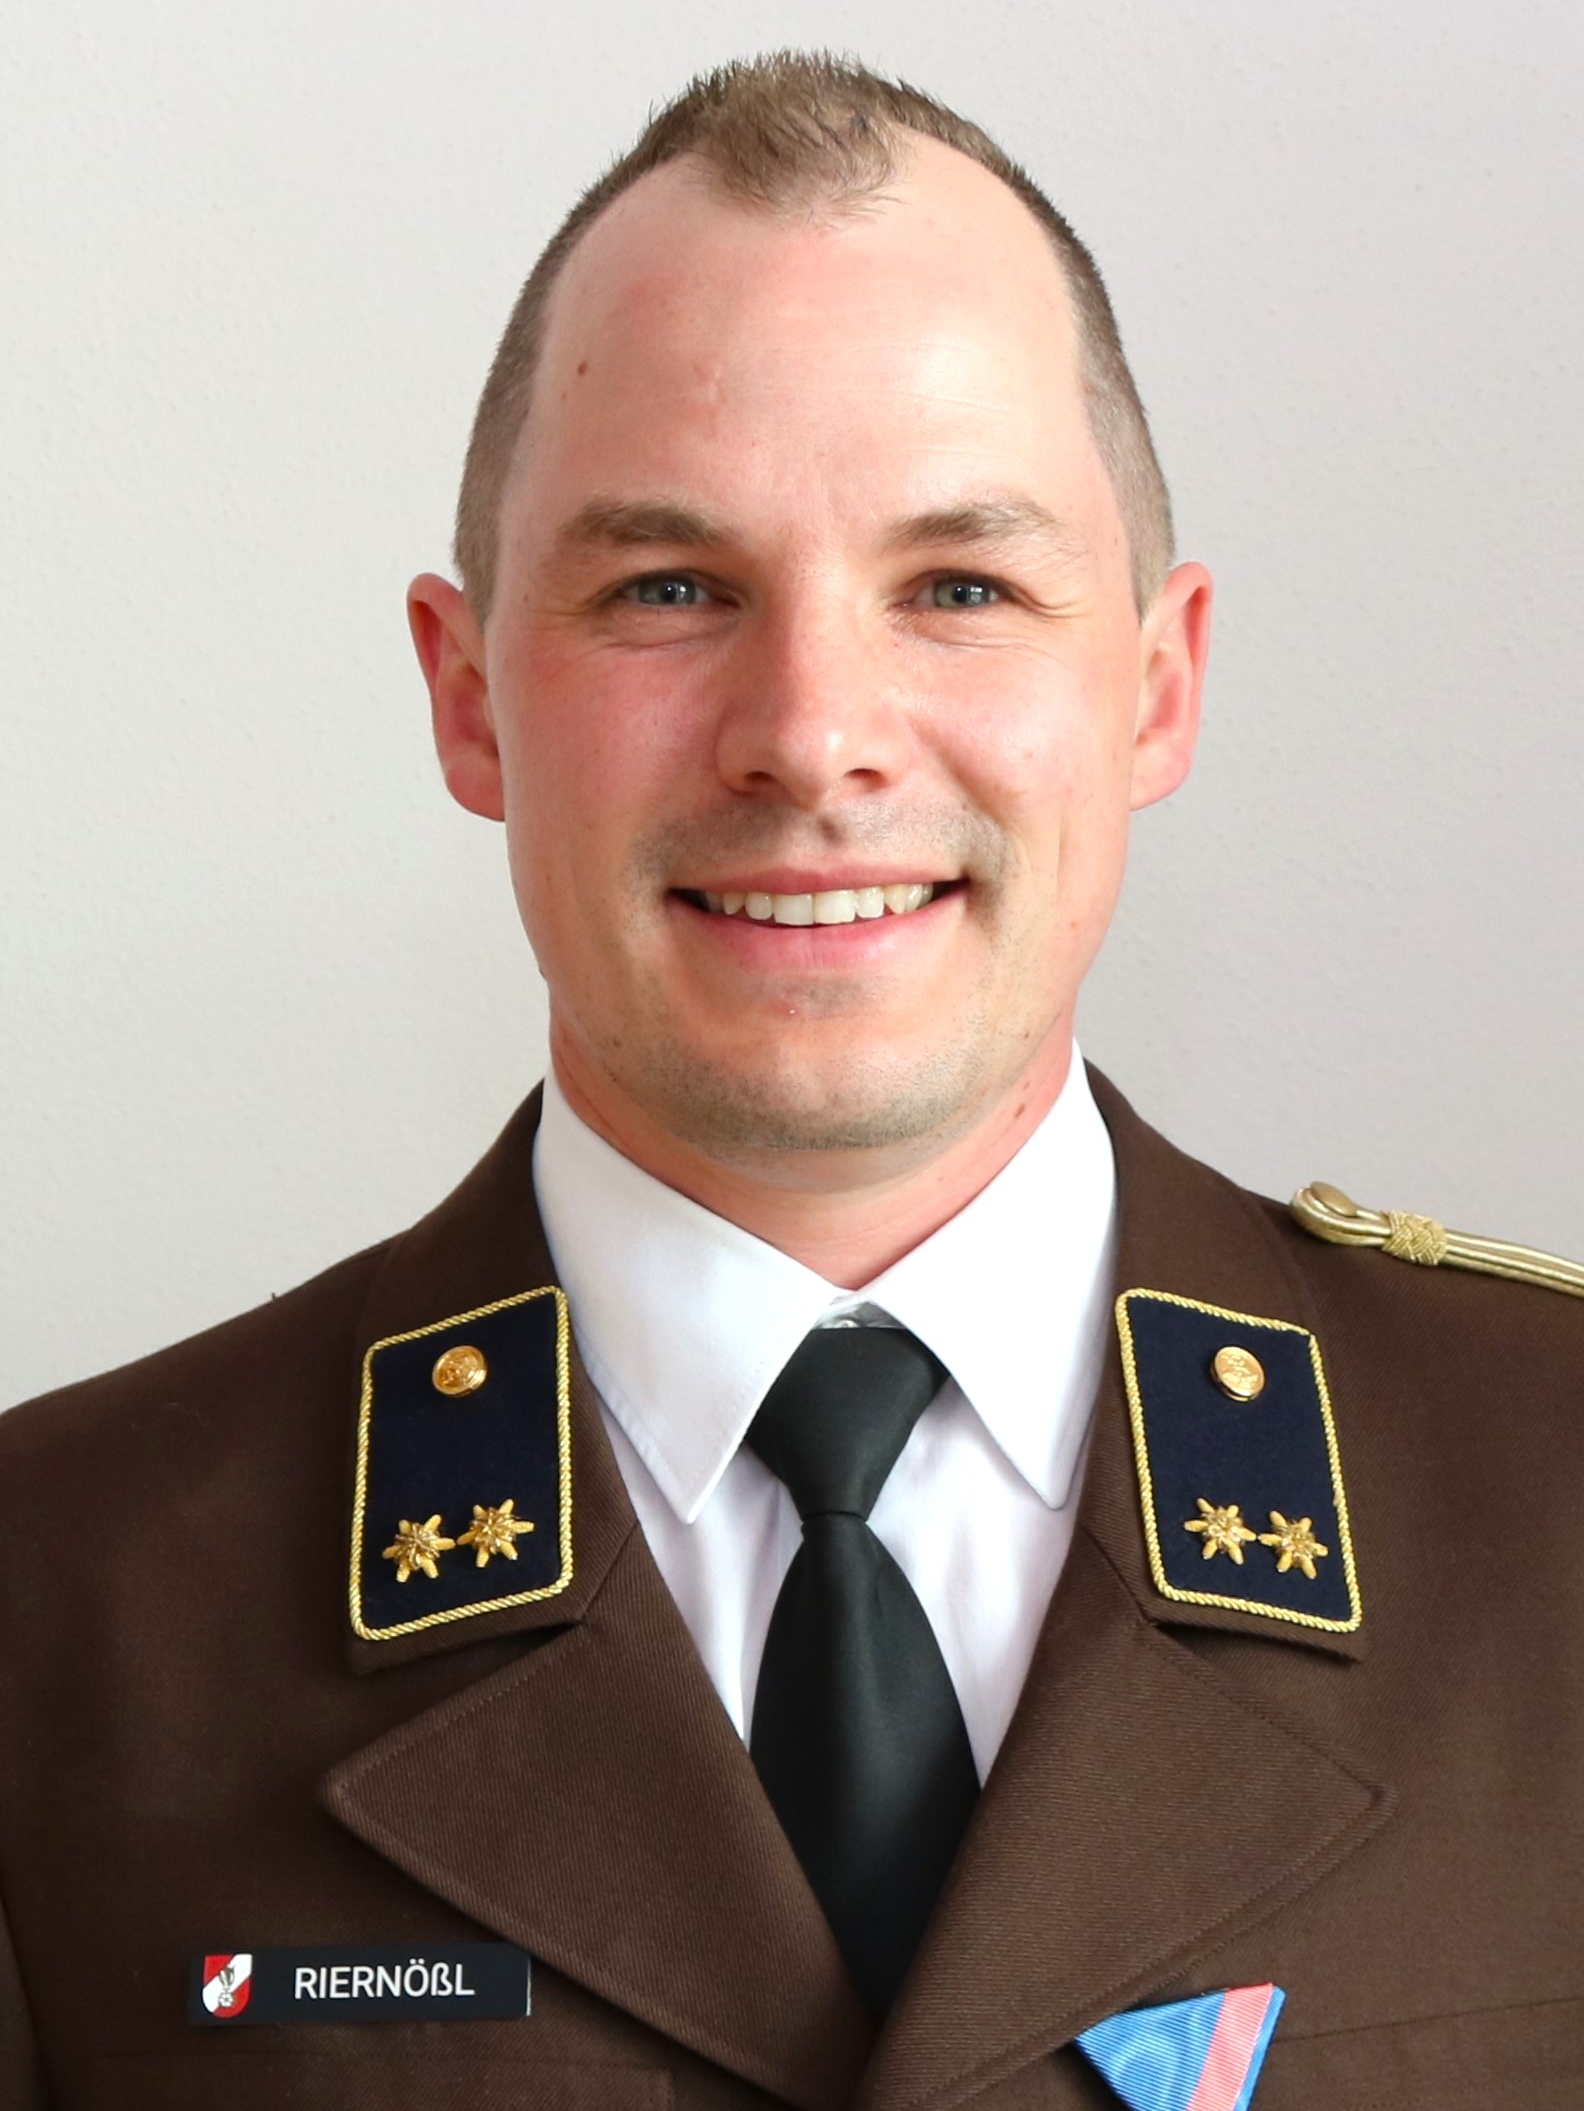 Georg Riernößl